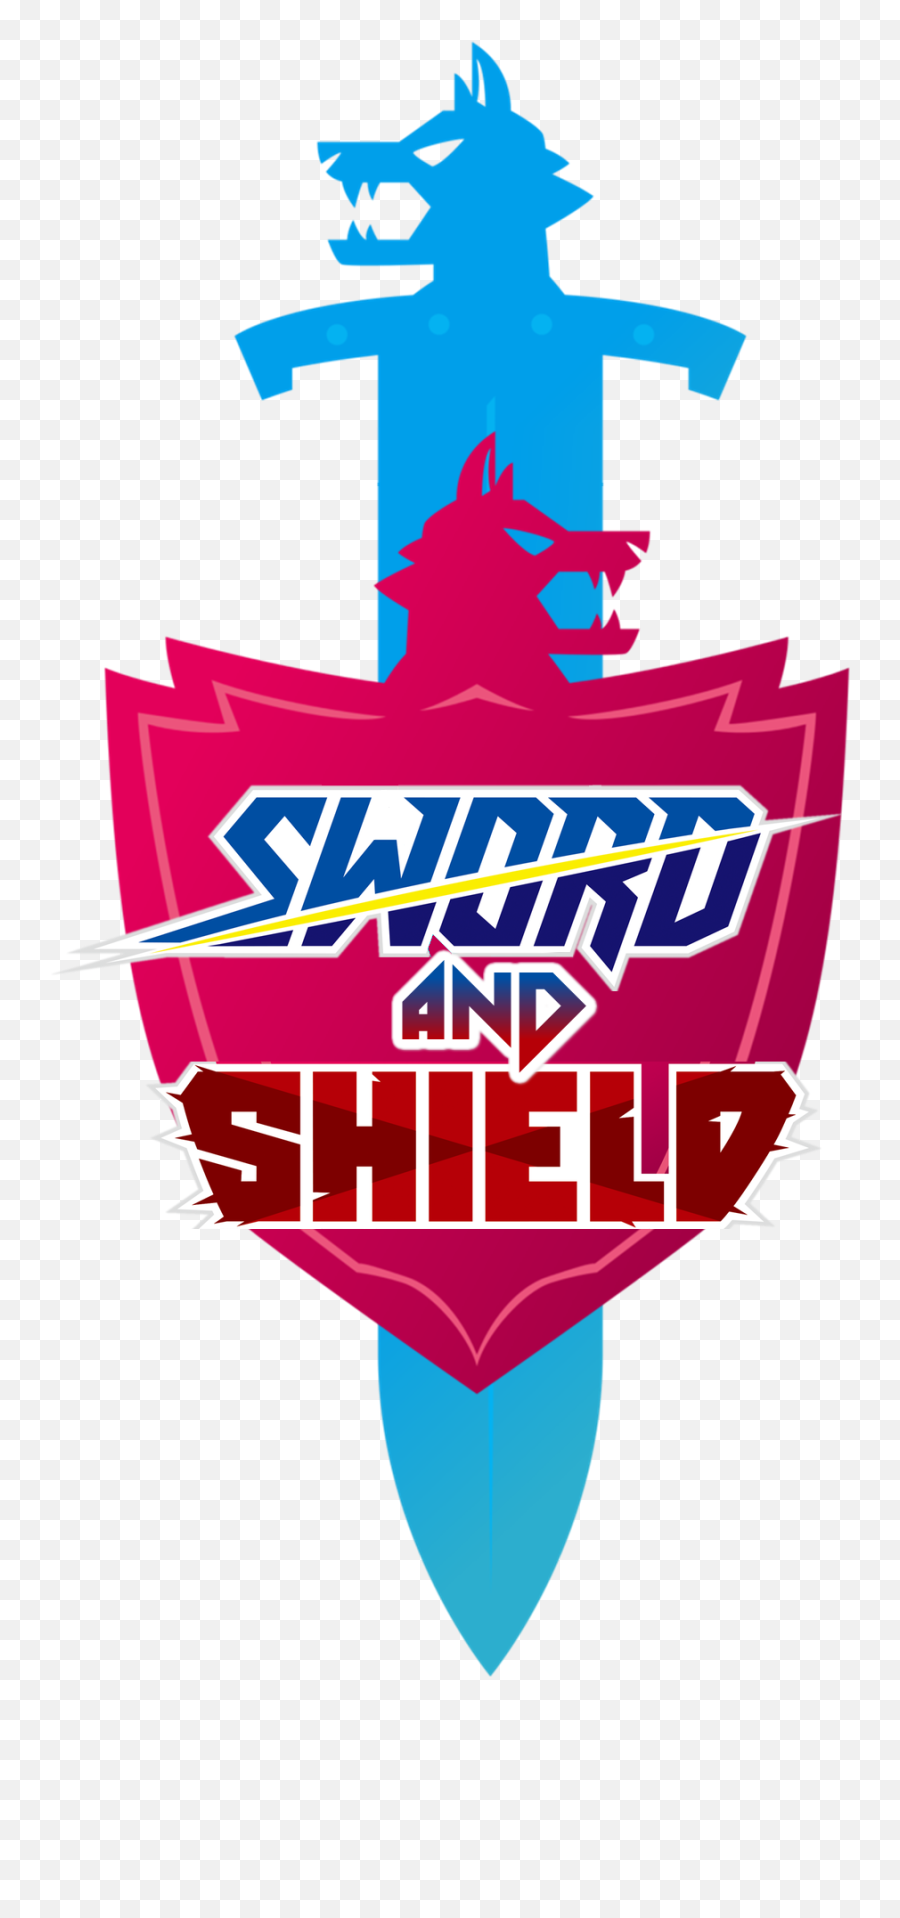 Pokemon Sword And Shield In One Logo - Pokemon Sword And Shield Logos Png,Pokemon Logo Transparent